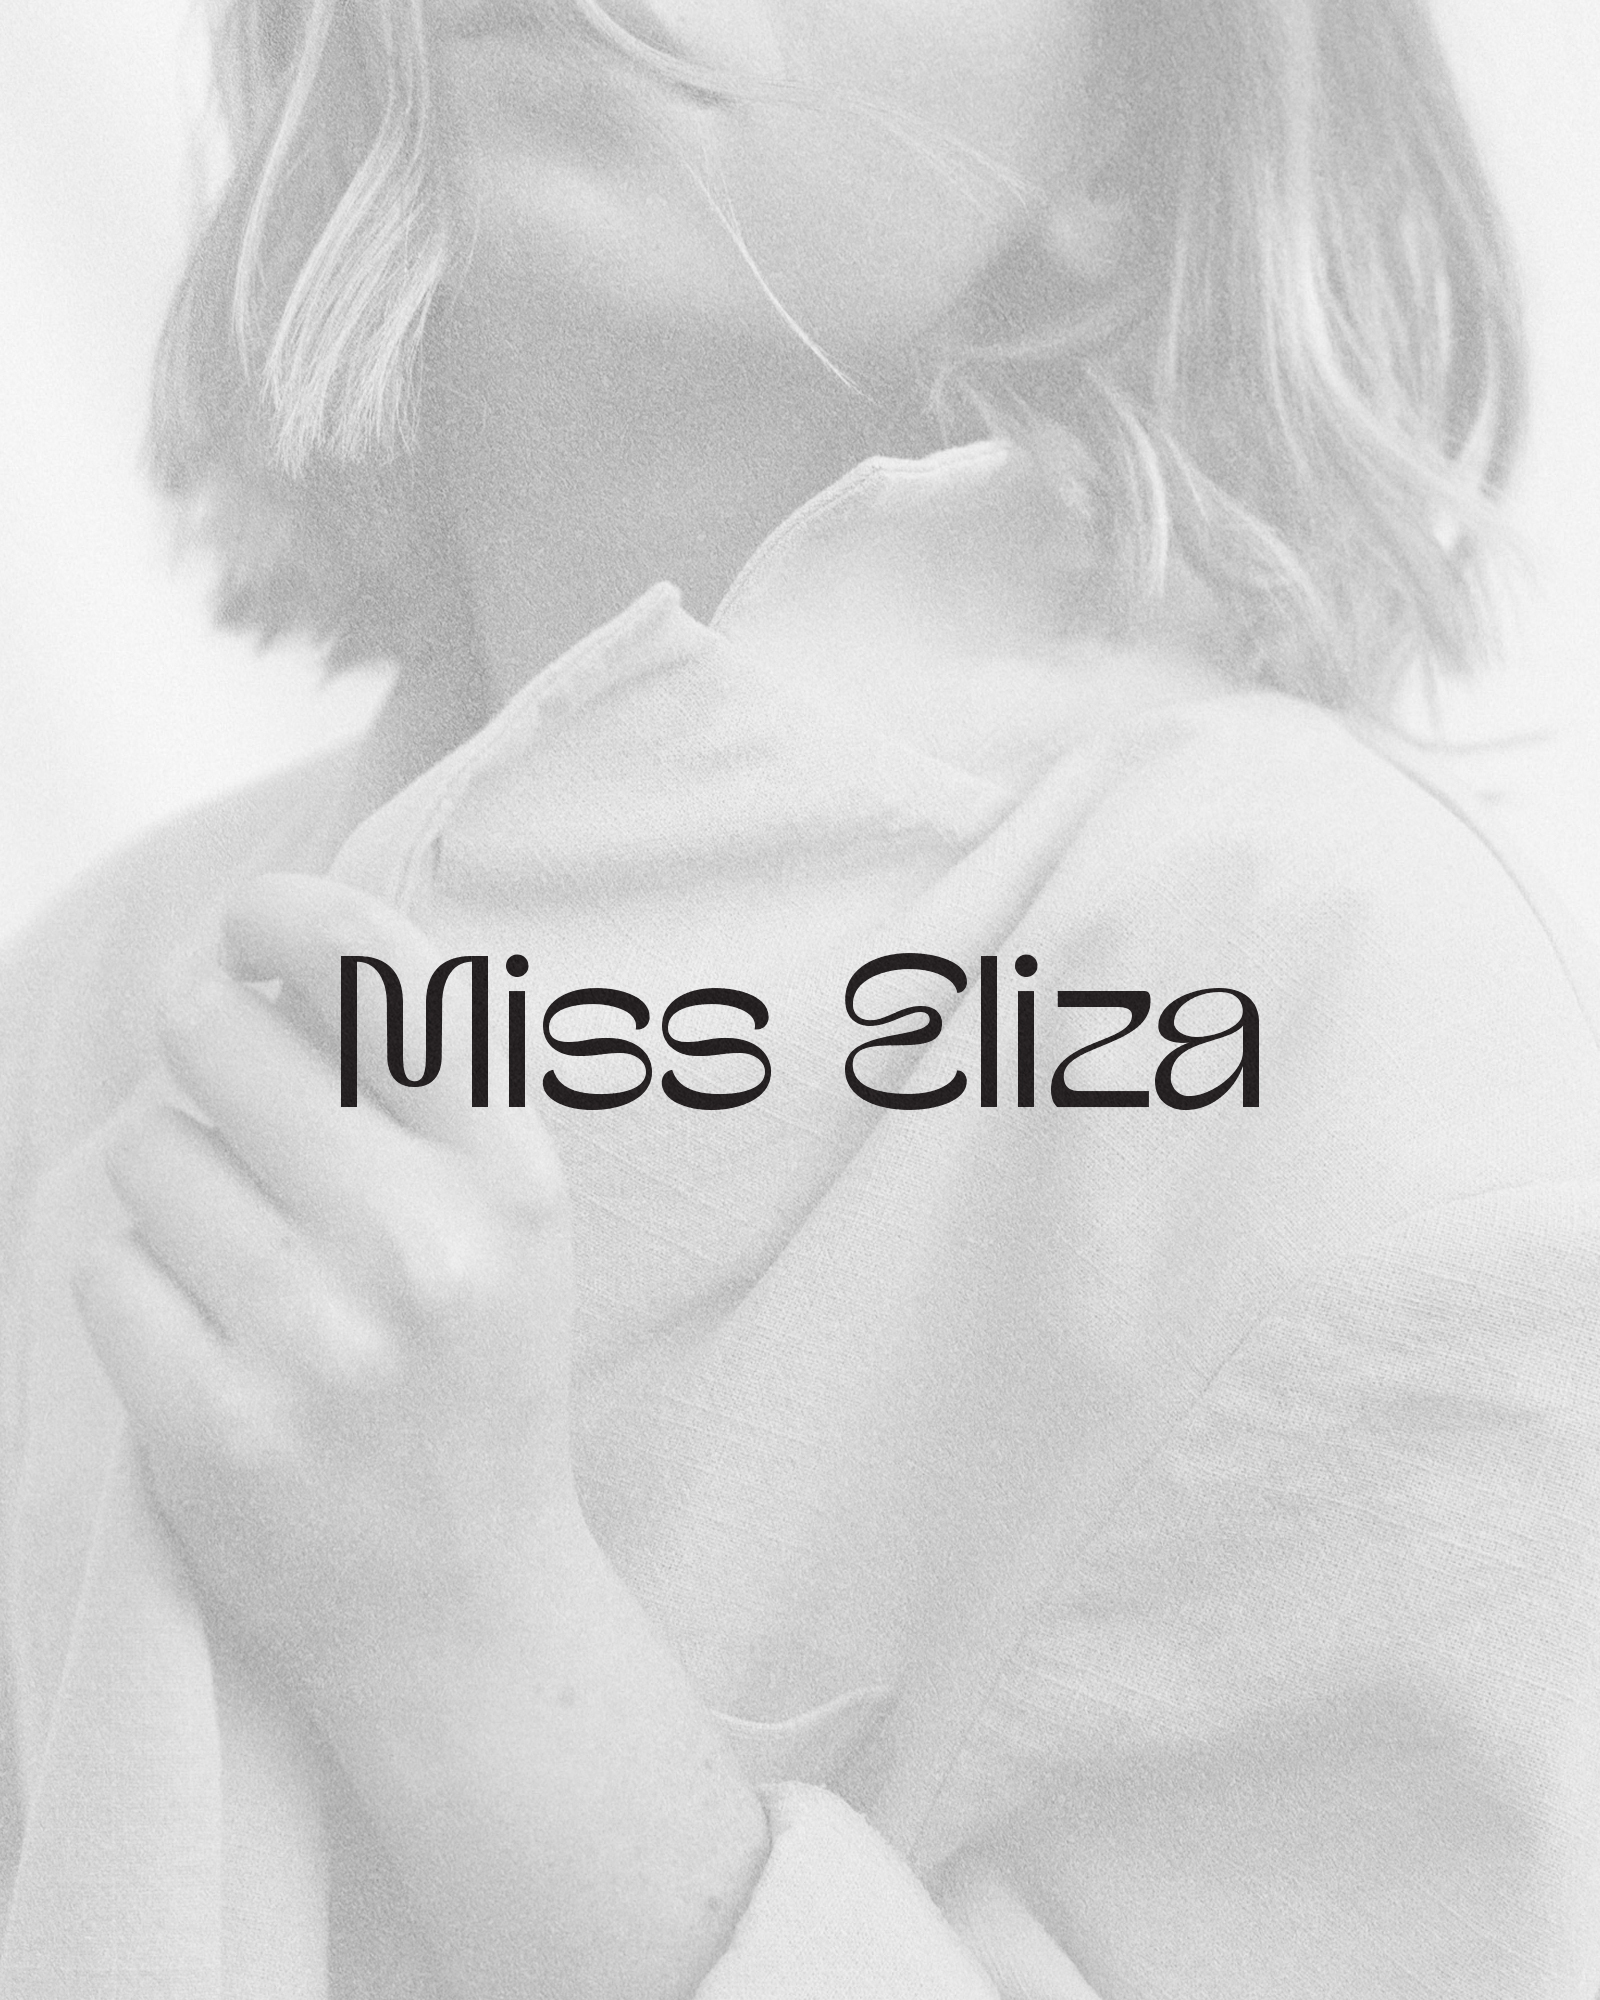 Miss-ElizaArtboard 2